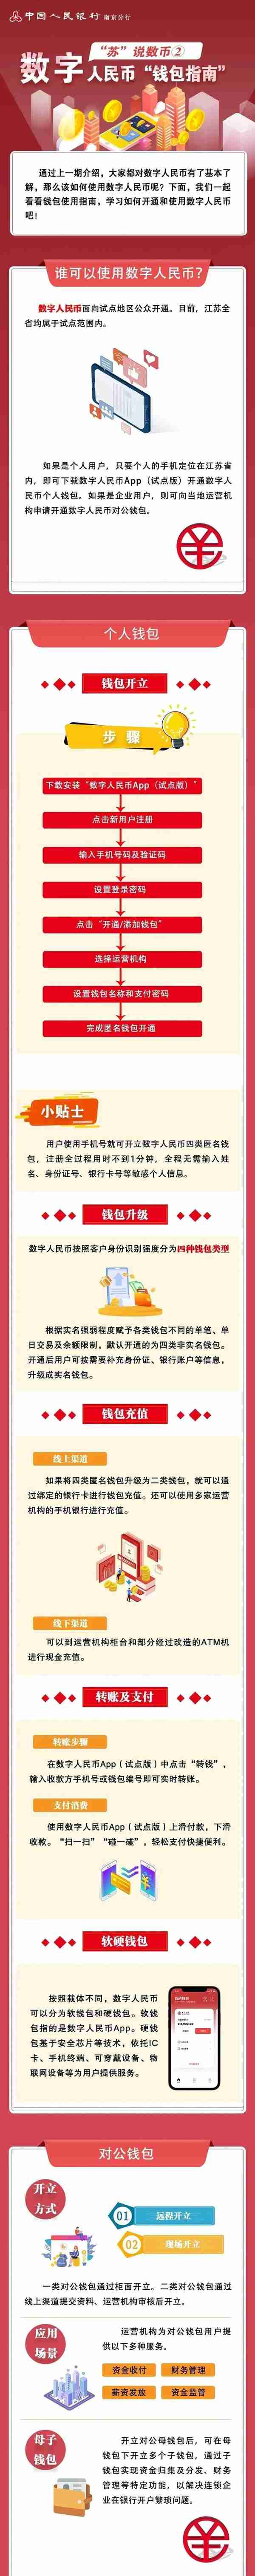 南京虚拟货币申请方法